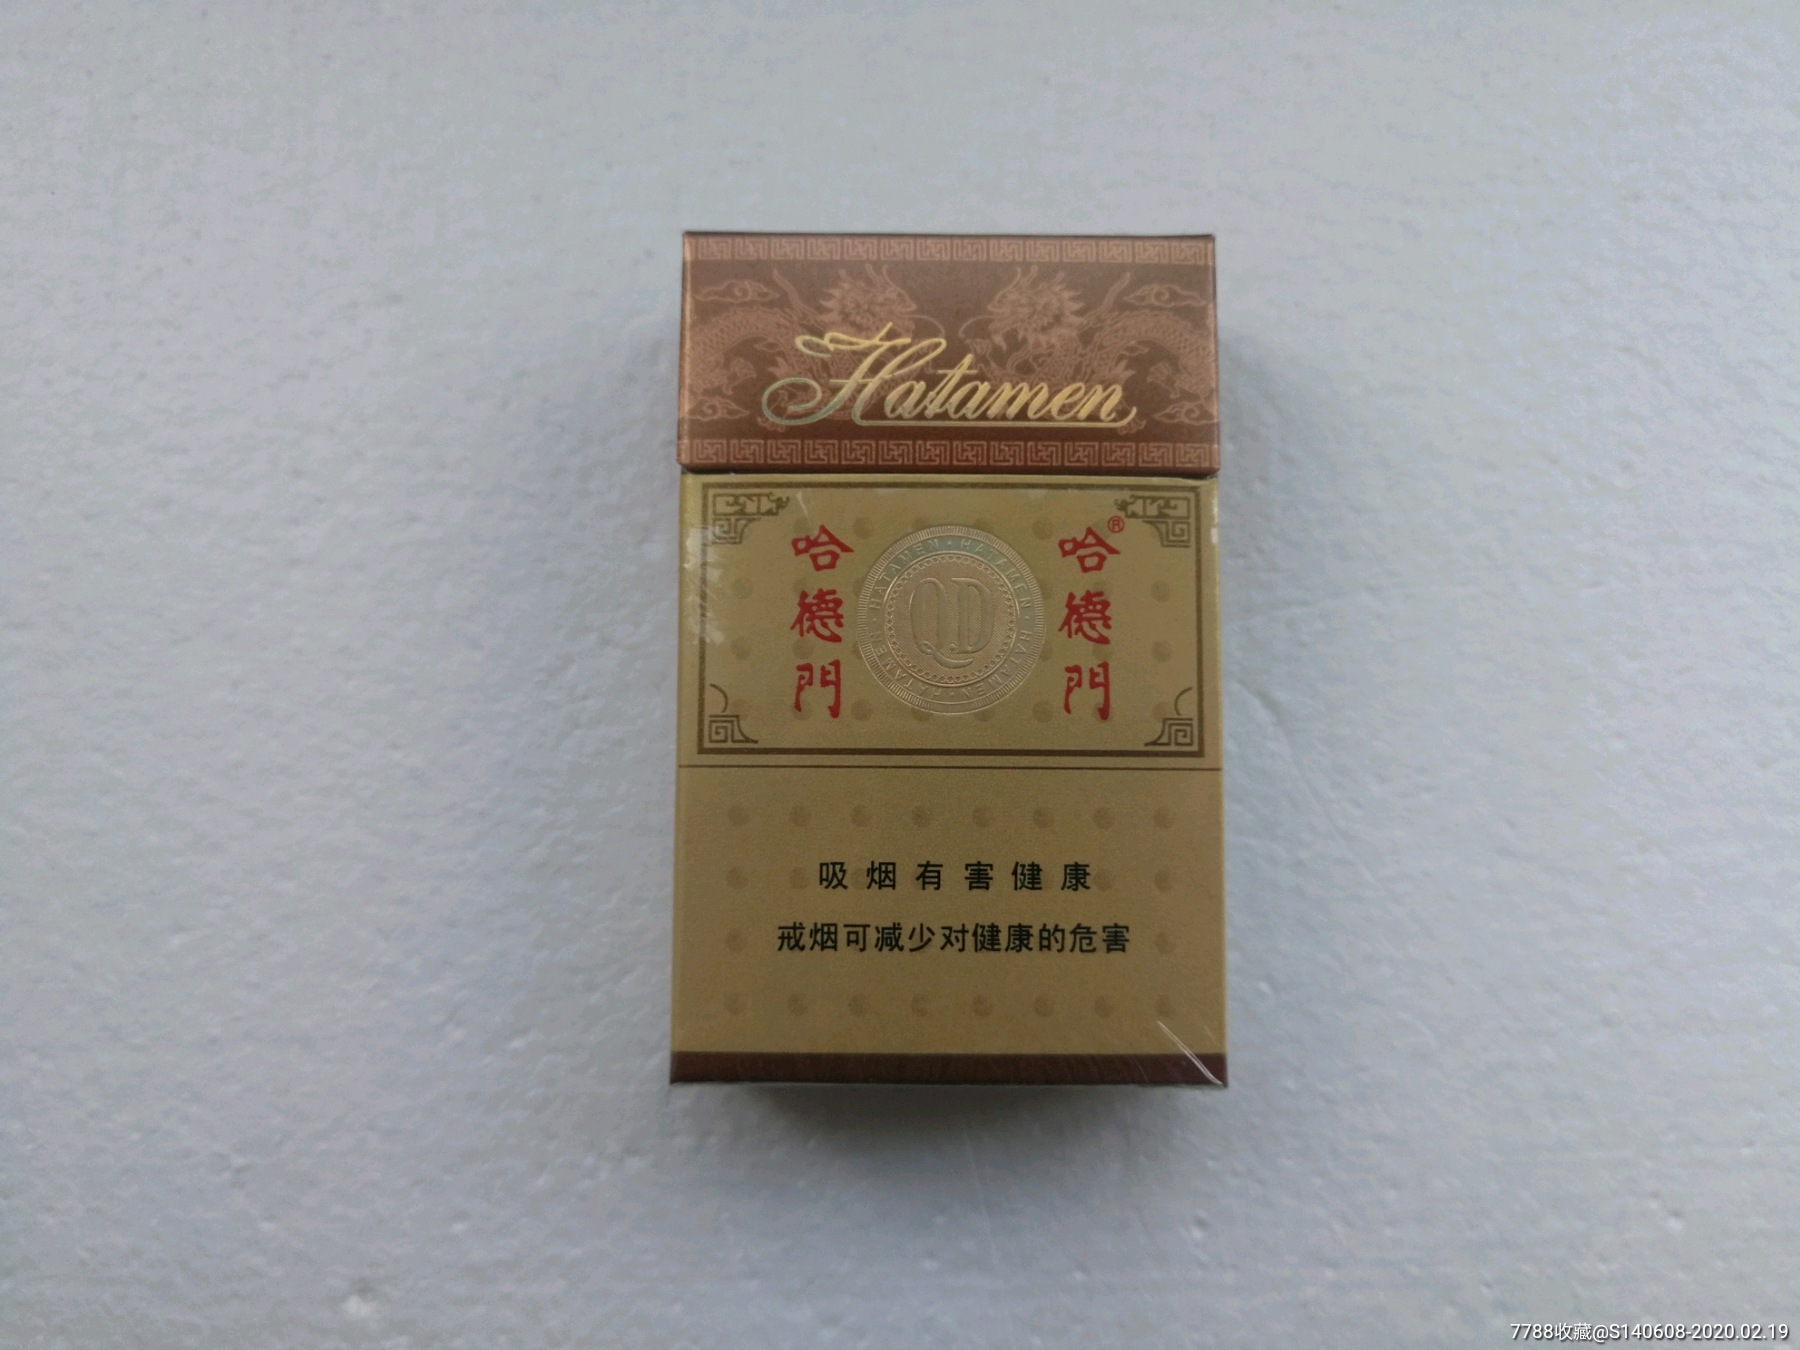 哈德门【09版】3d-价格:1.0000元-se71161359-烟标